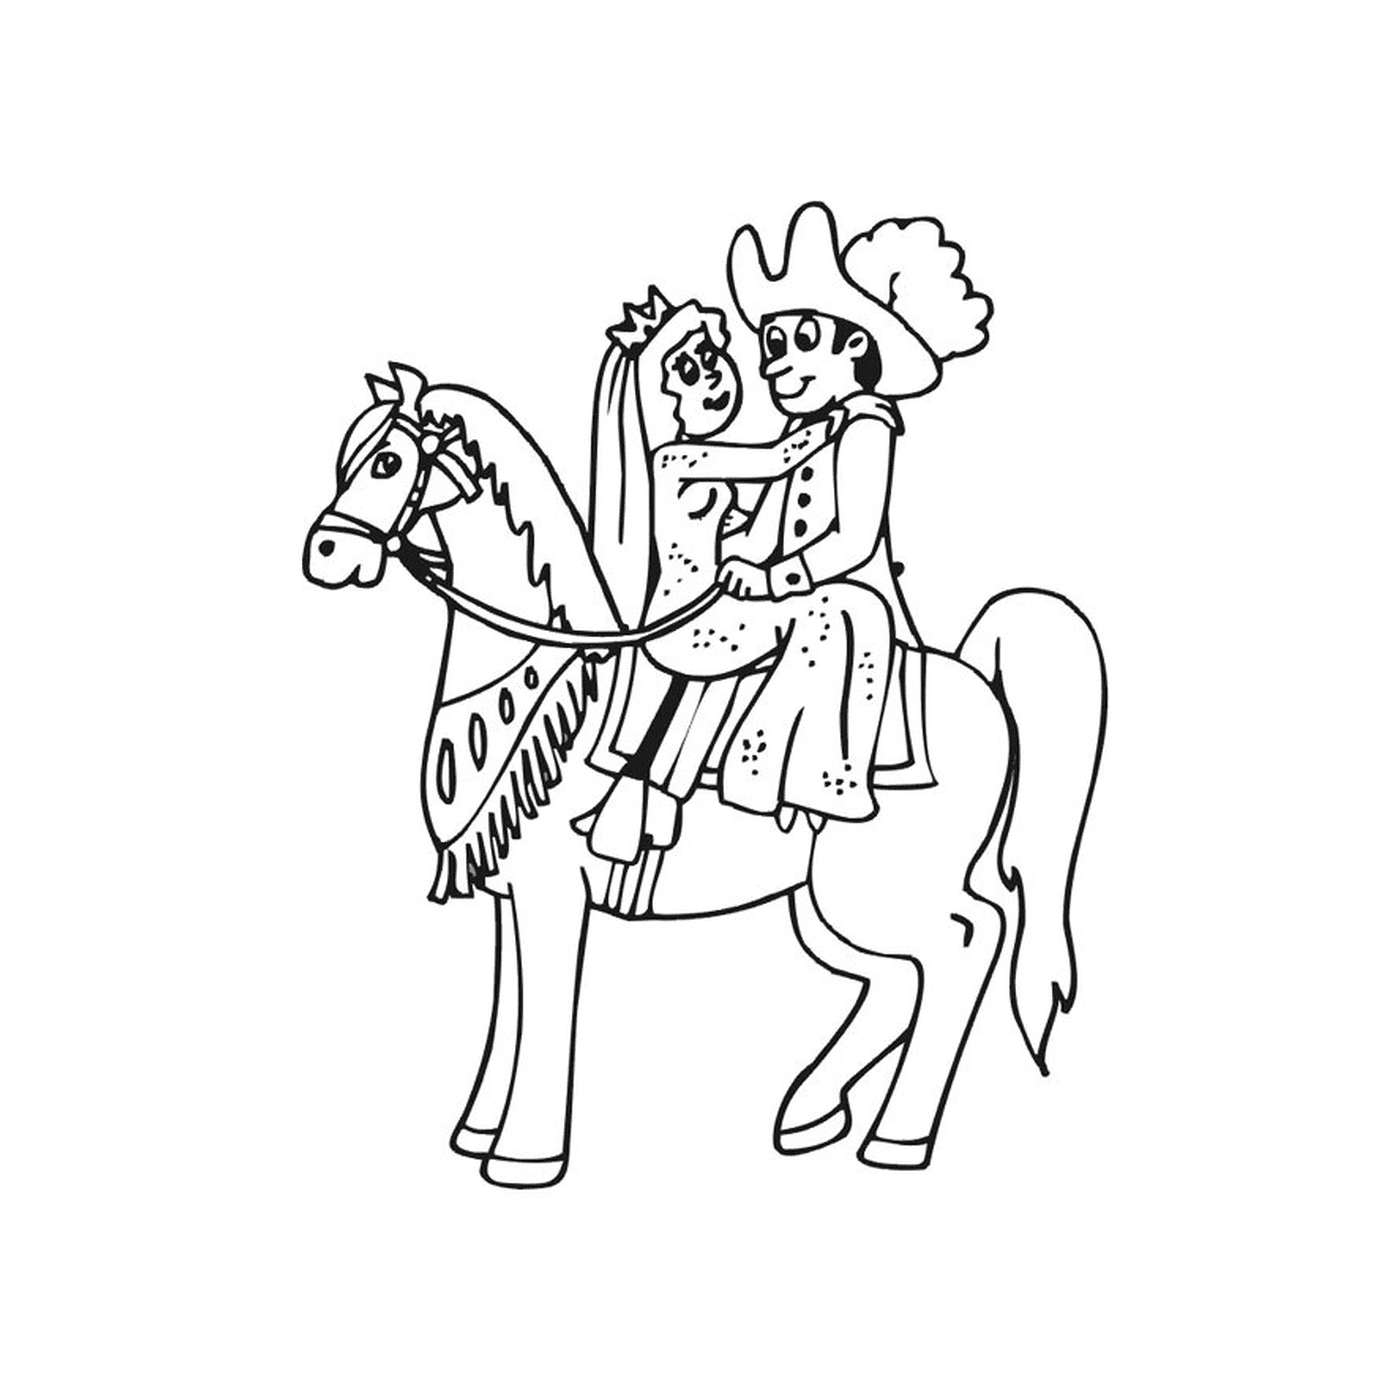  Принцесса Конь - человек, сидящий на коричневой лошади 